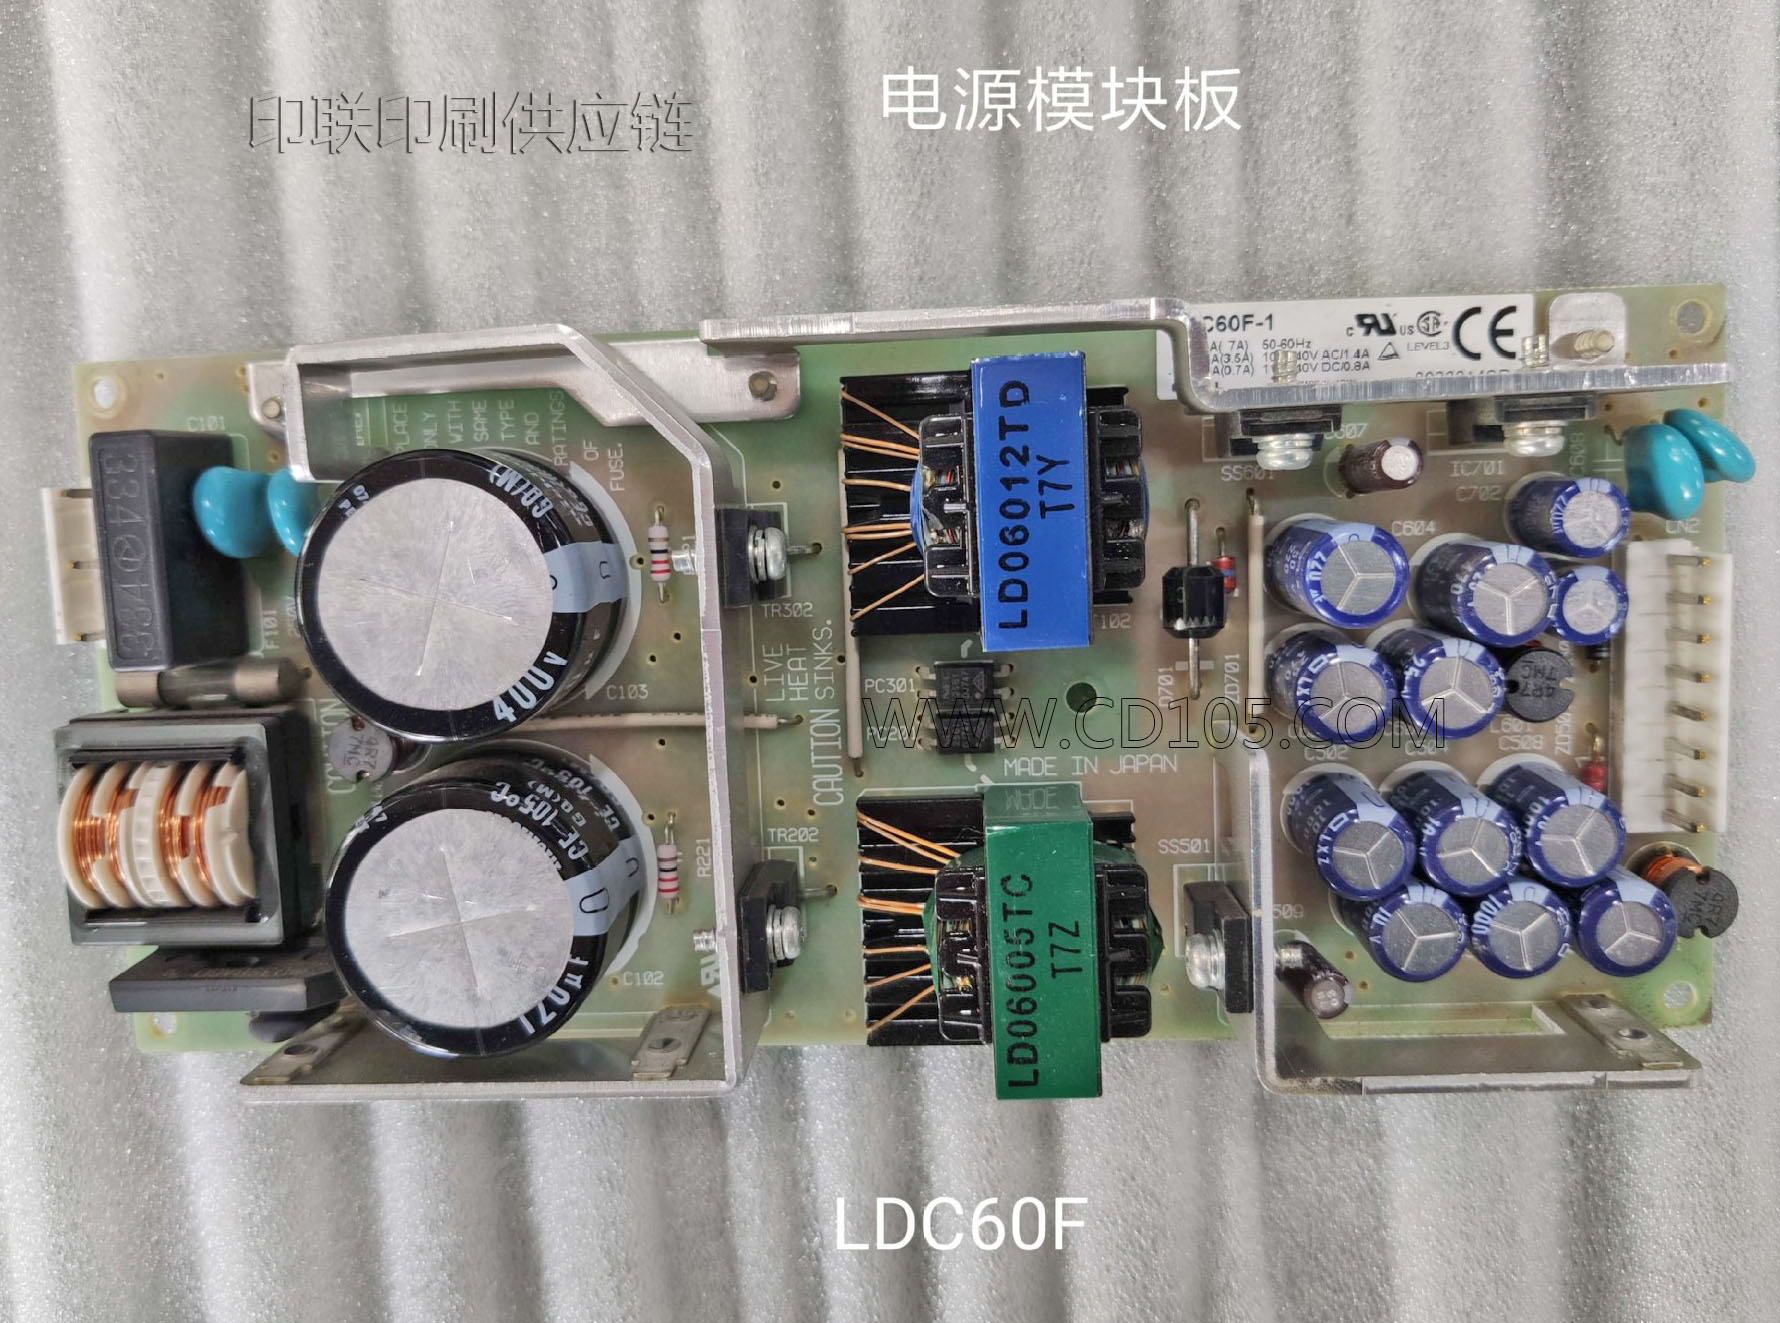 1三菱机电源模块电路板,LDC60F-1,钻石D3000电路板.jpg